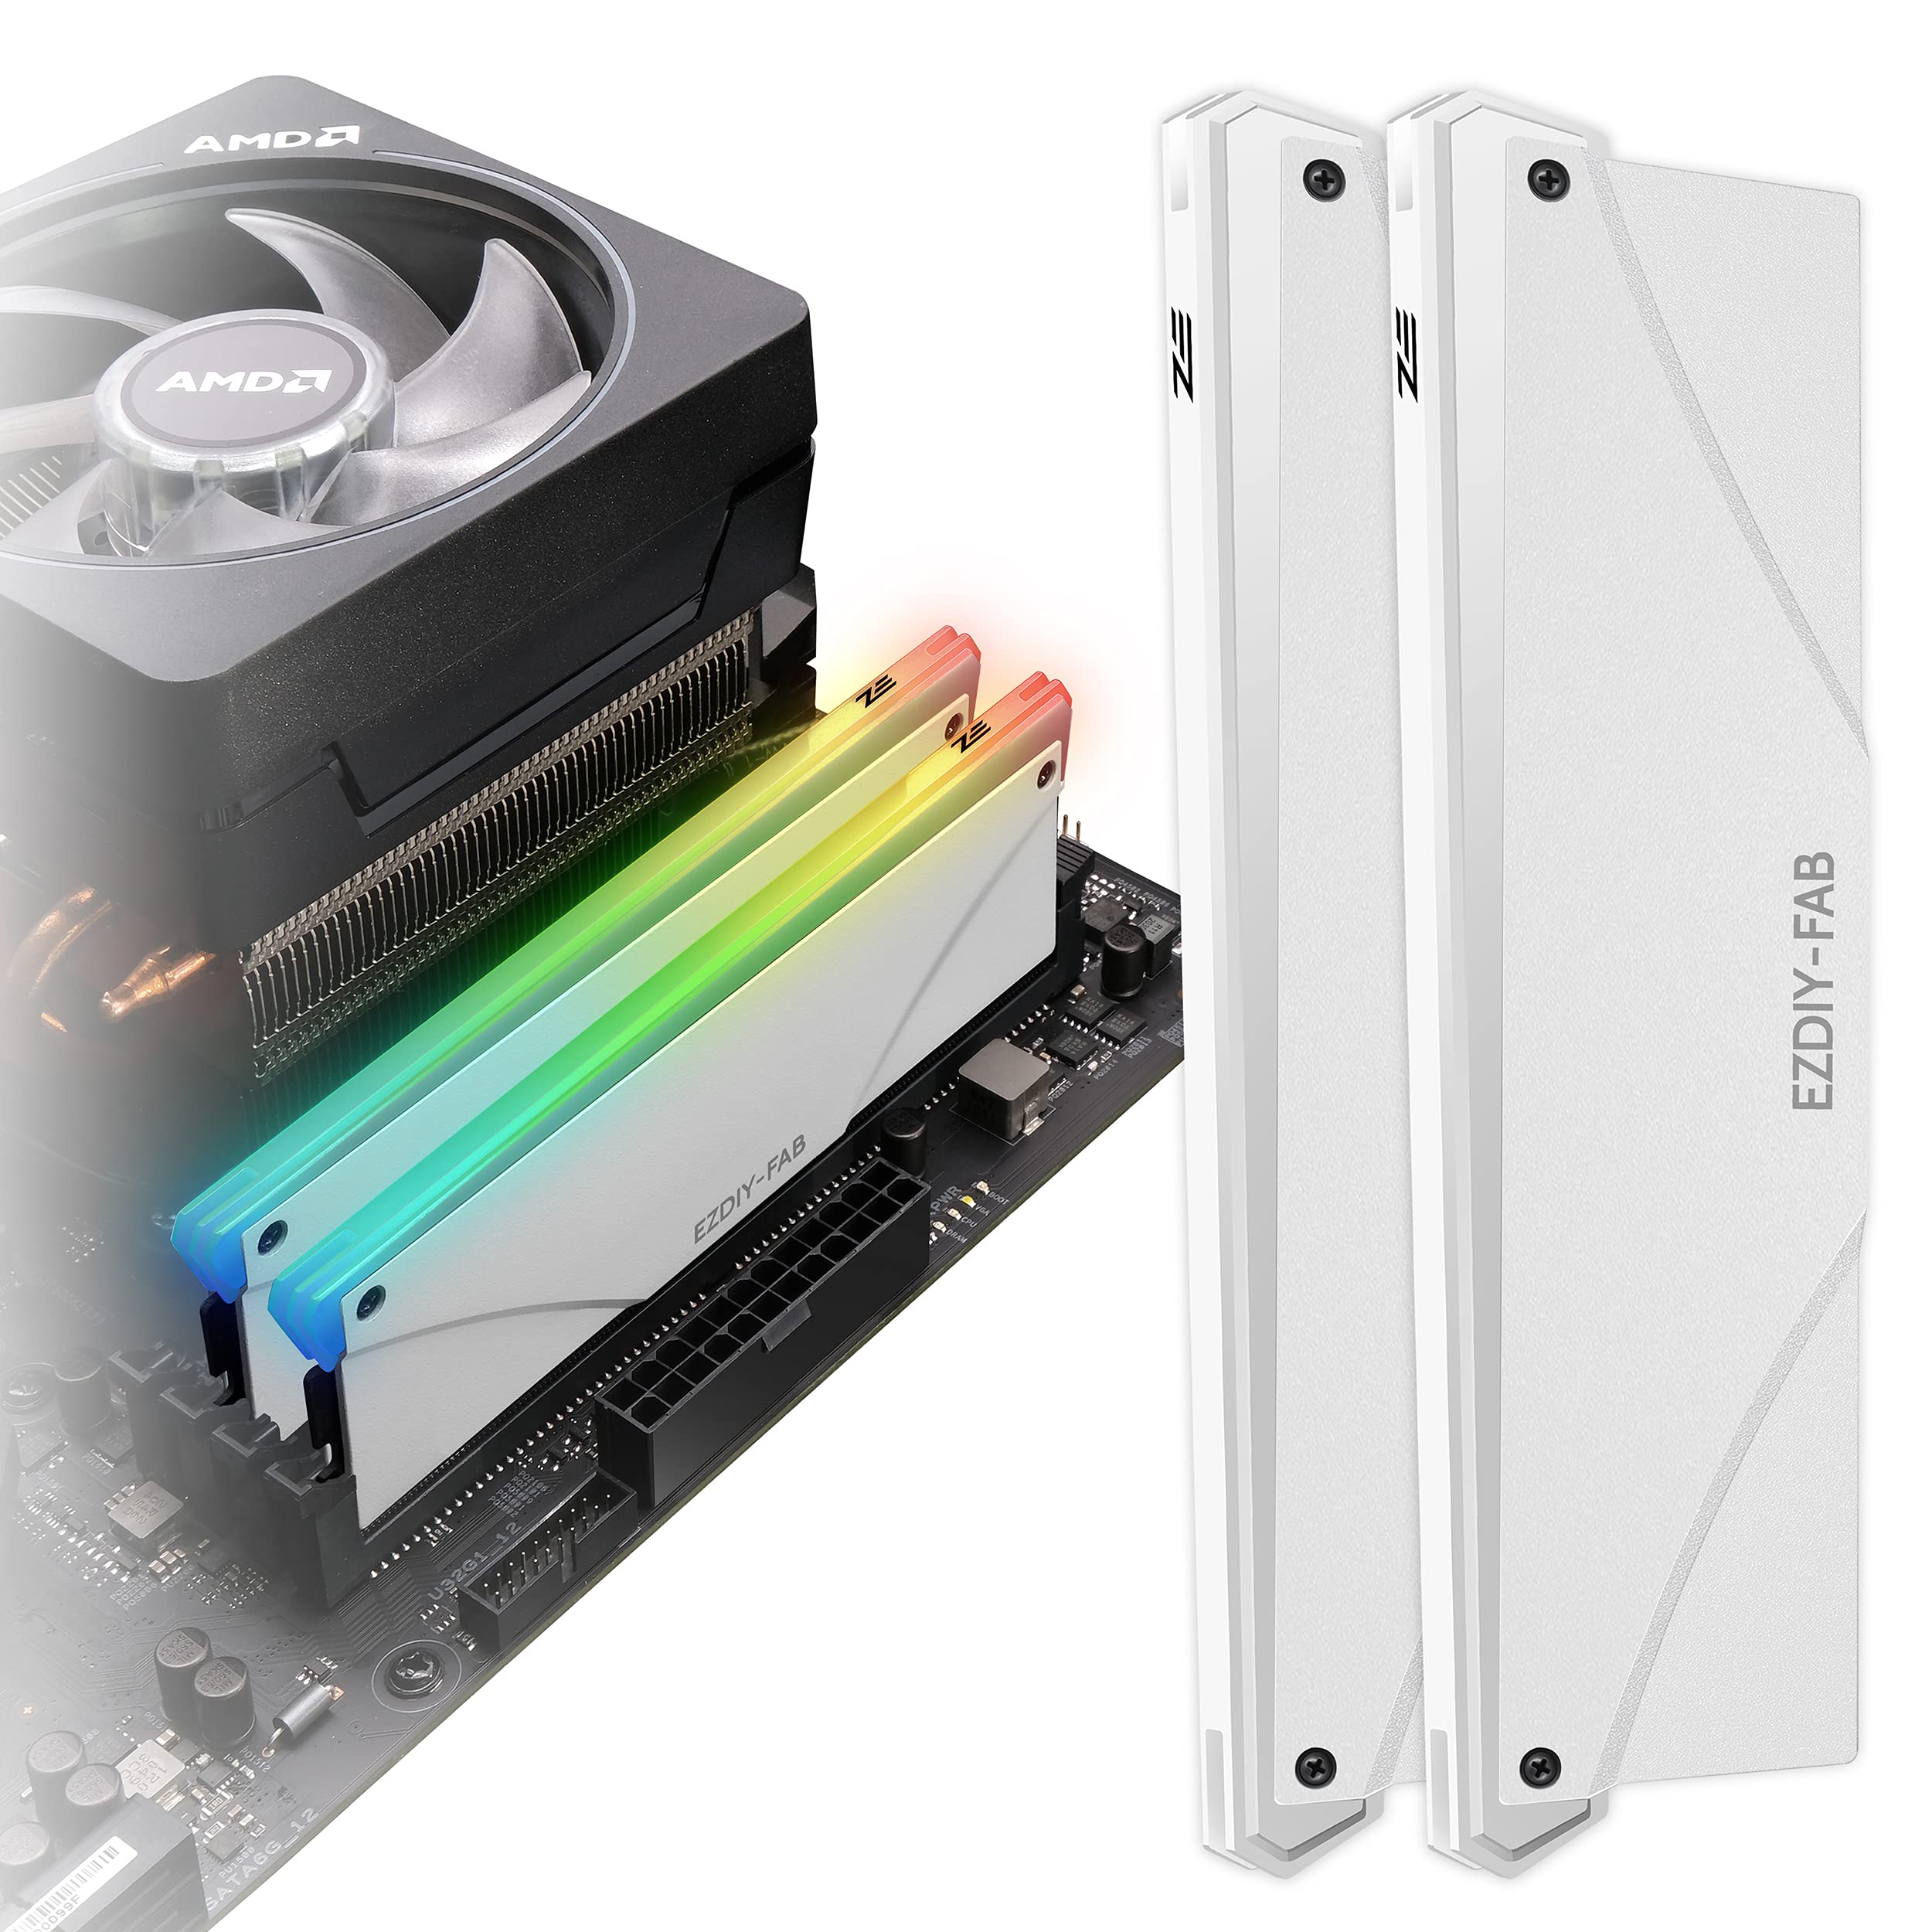 EZDIY-FAB 新しいバージョン RGB RAM 冷却 メモリヒートシンク アドレサブル RGB LED機能搭載 (デスクトップ オーバークロックPC用 メモリ)-白い 2本1セット [PI061]